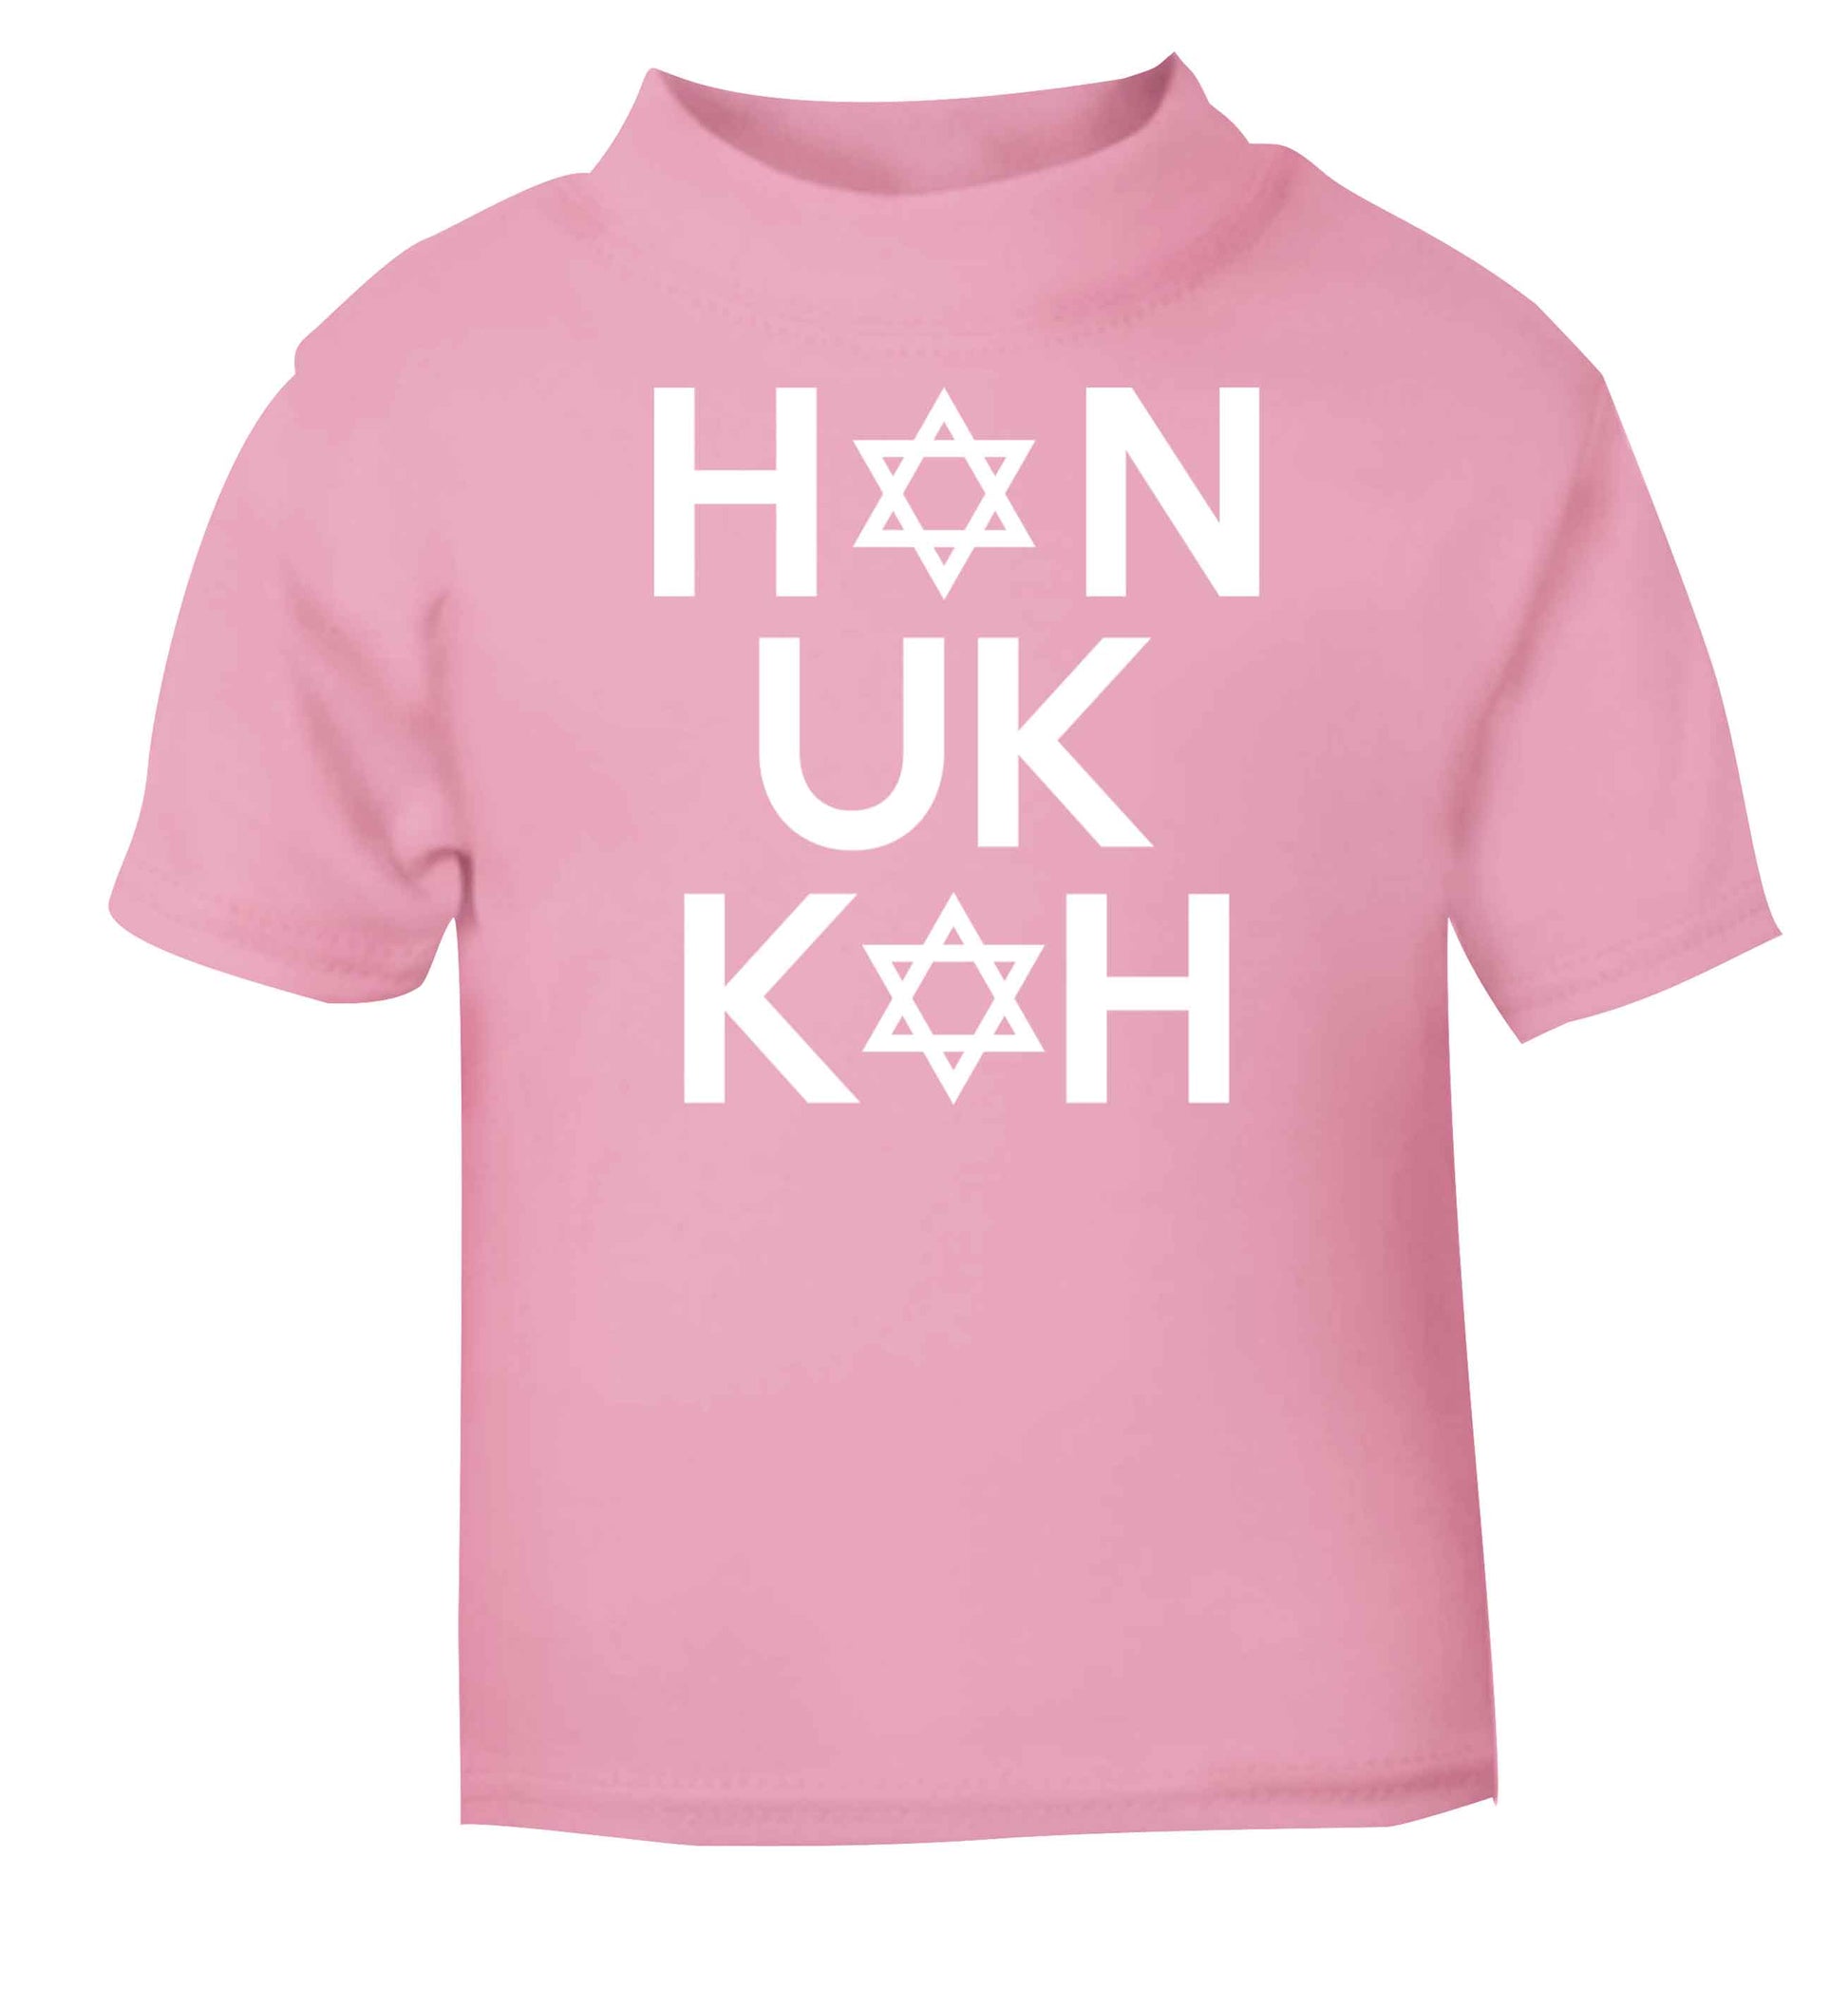 Han uk kah  Hanukkah star of david light pink baby toddler Tshirt 2 Years